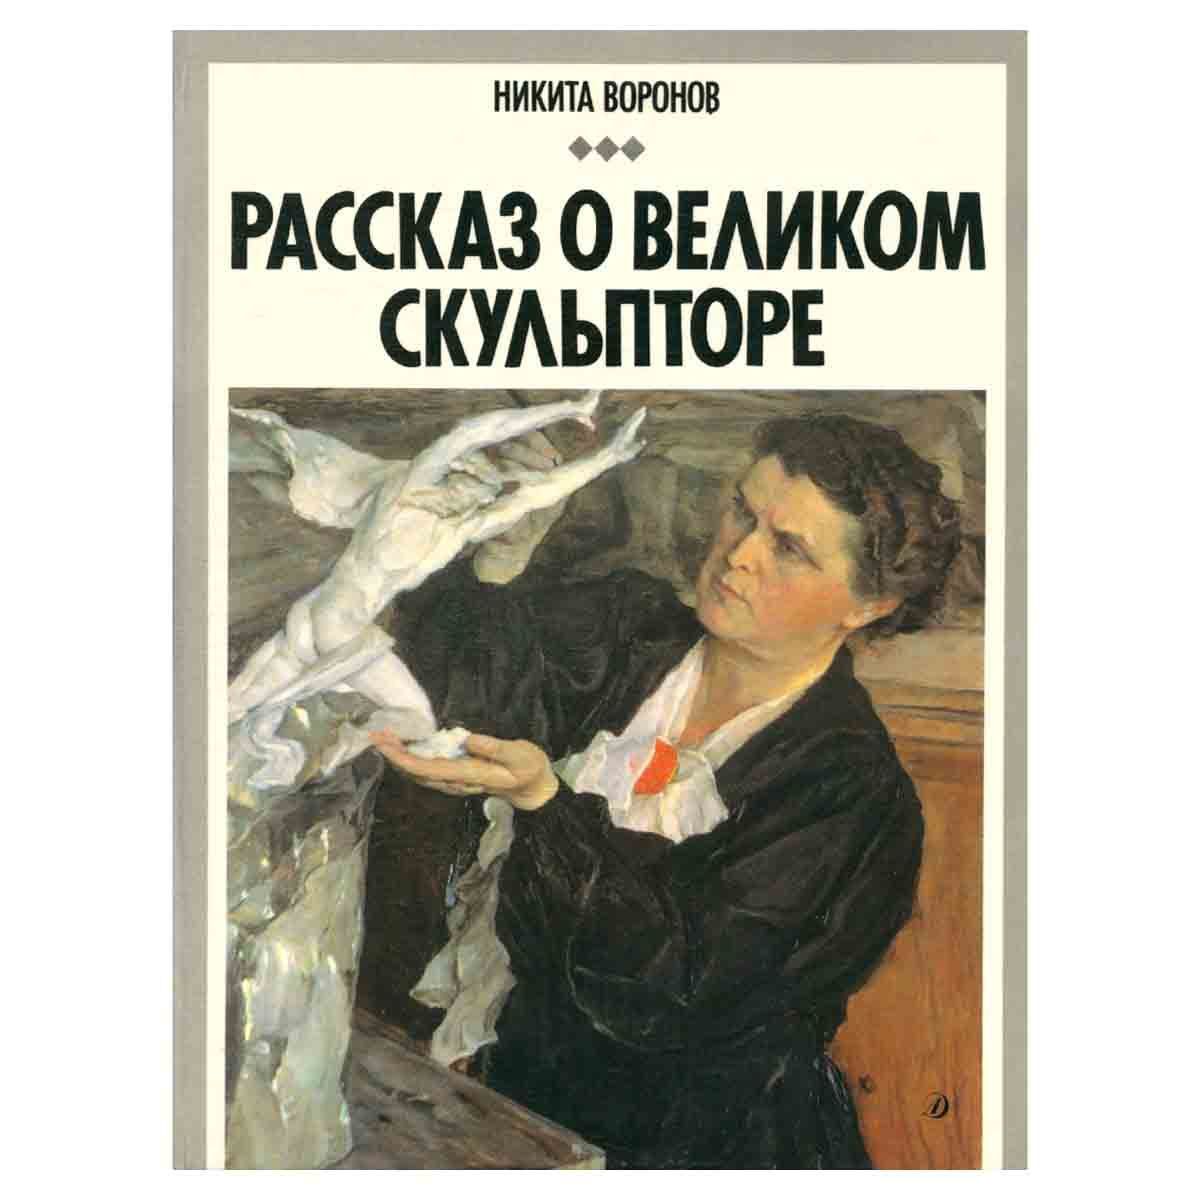 Воронов рассказ о Великом скульпторе книга.